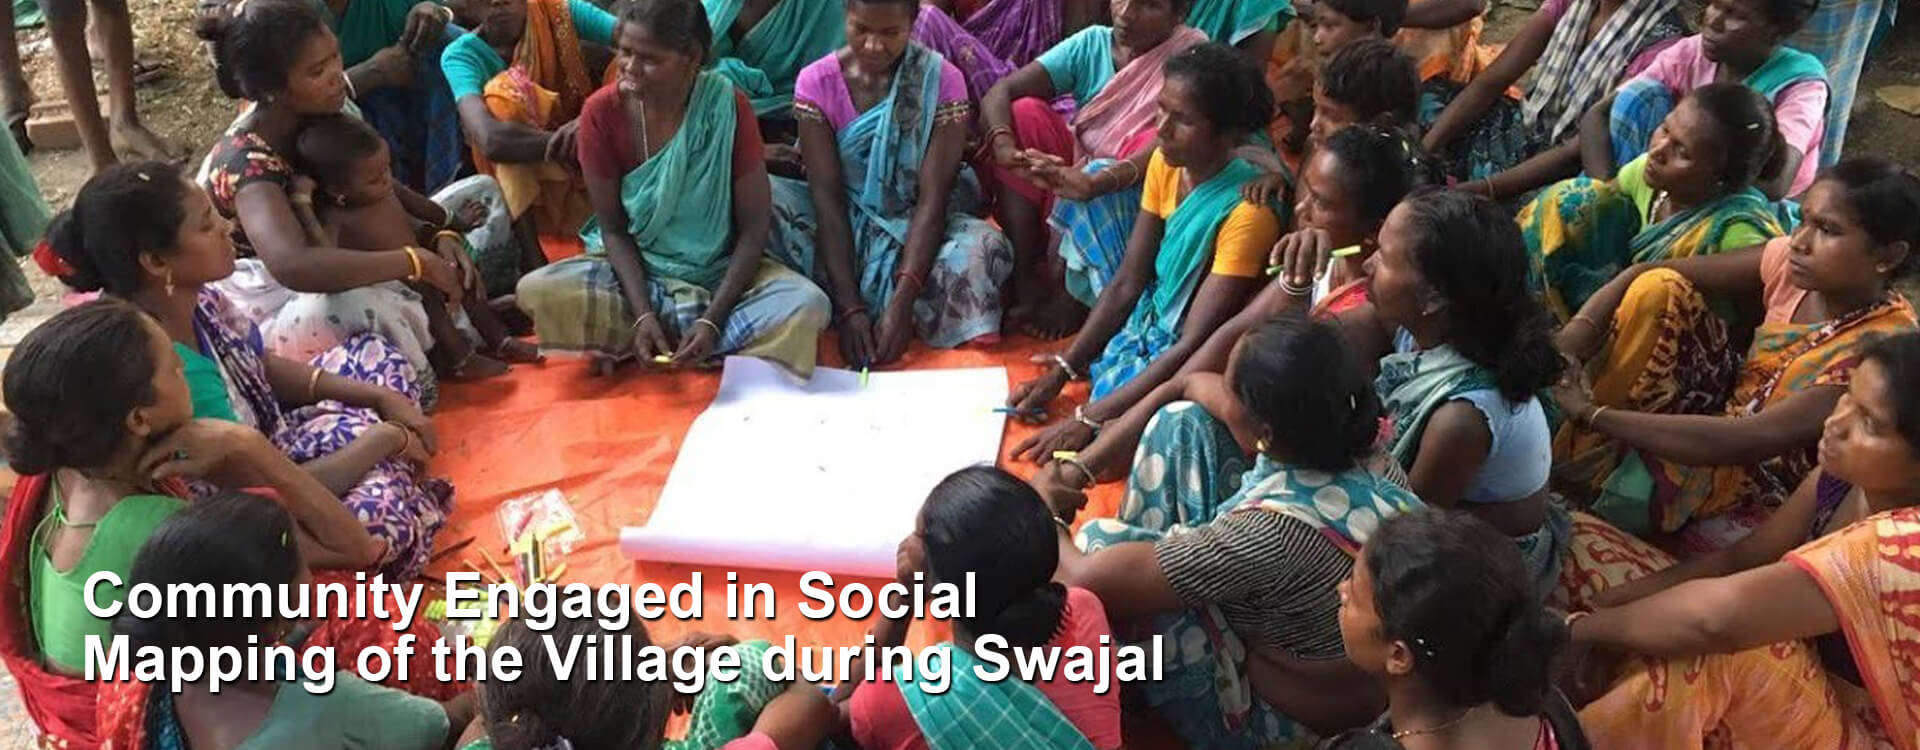 swajal-banner